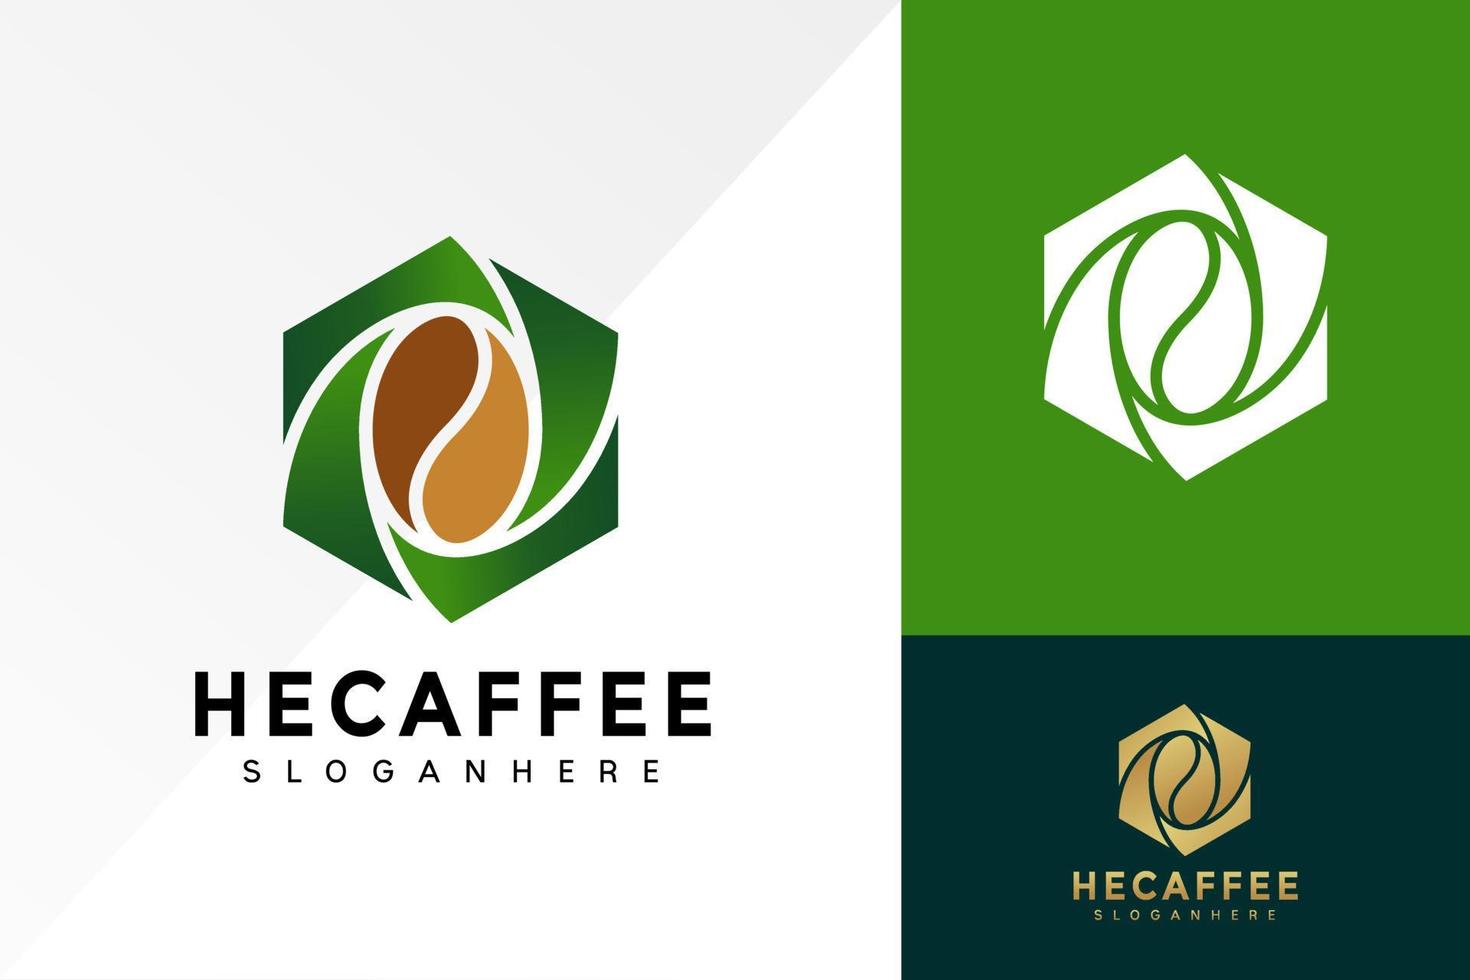 diseño de logotipo de la casa de café hexagonal, vector de logotipos de negocios de coffeine, logotipo moderno, plantilla de ilustración de vector de diseños de logotipos